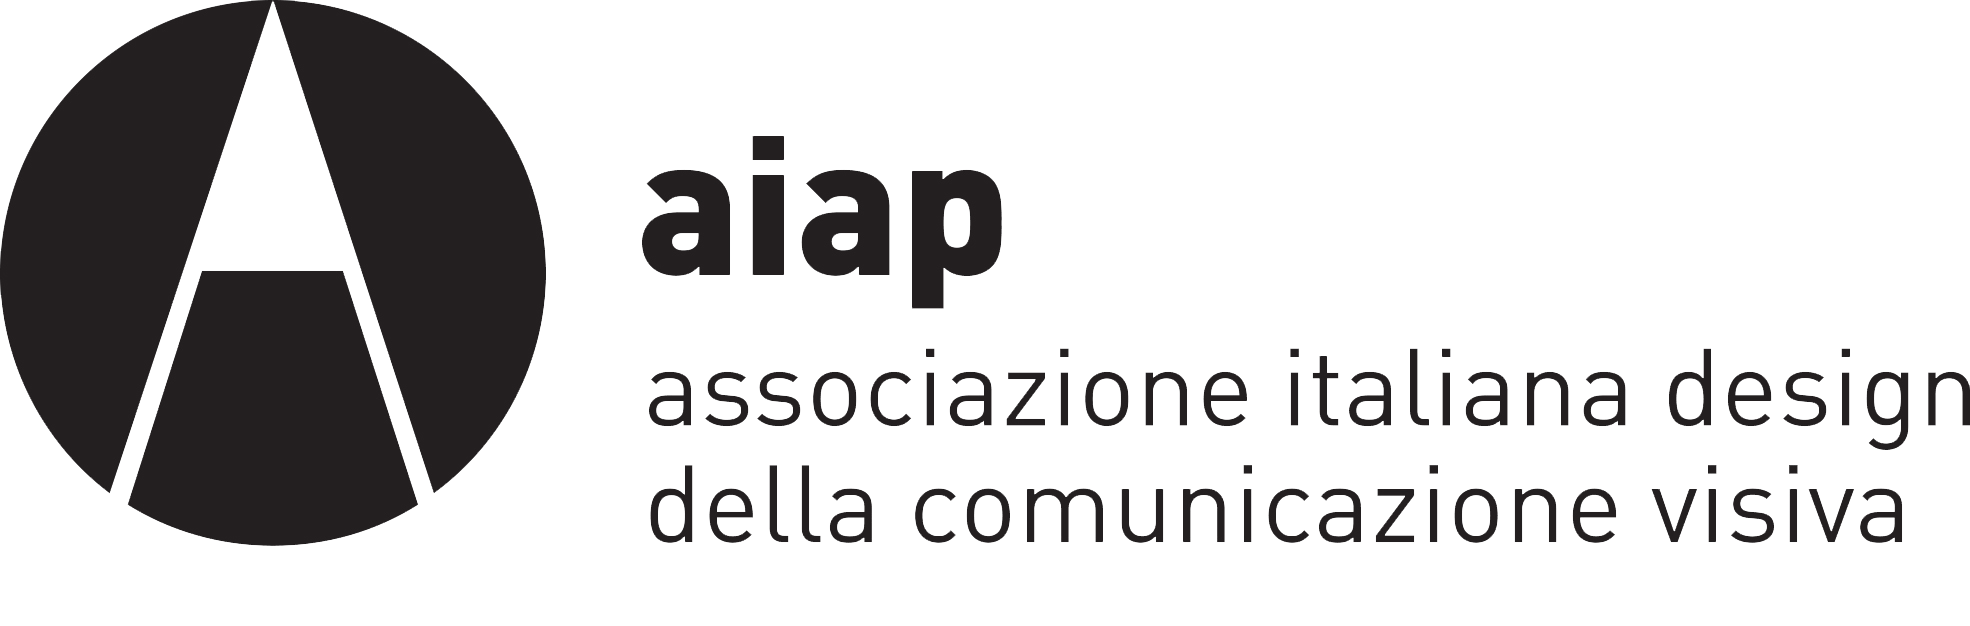 aiap_logo